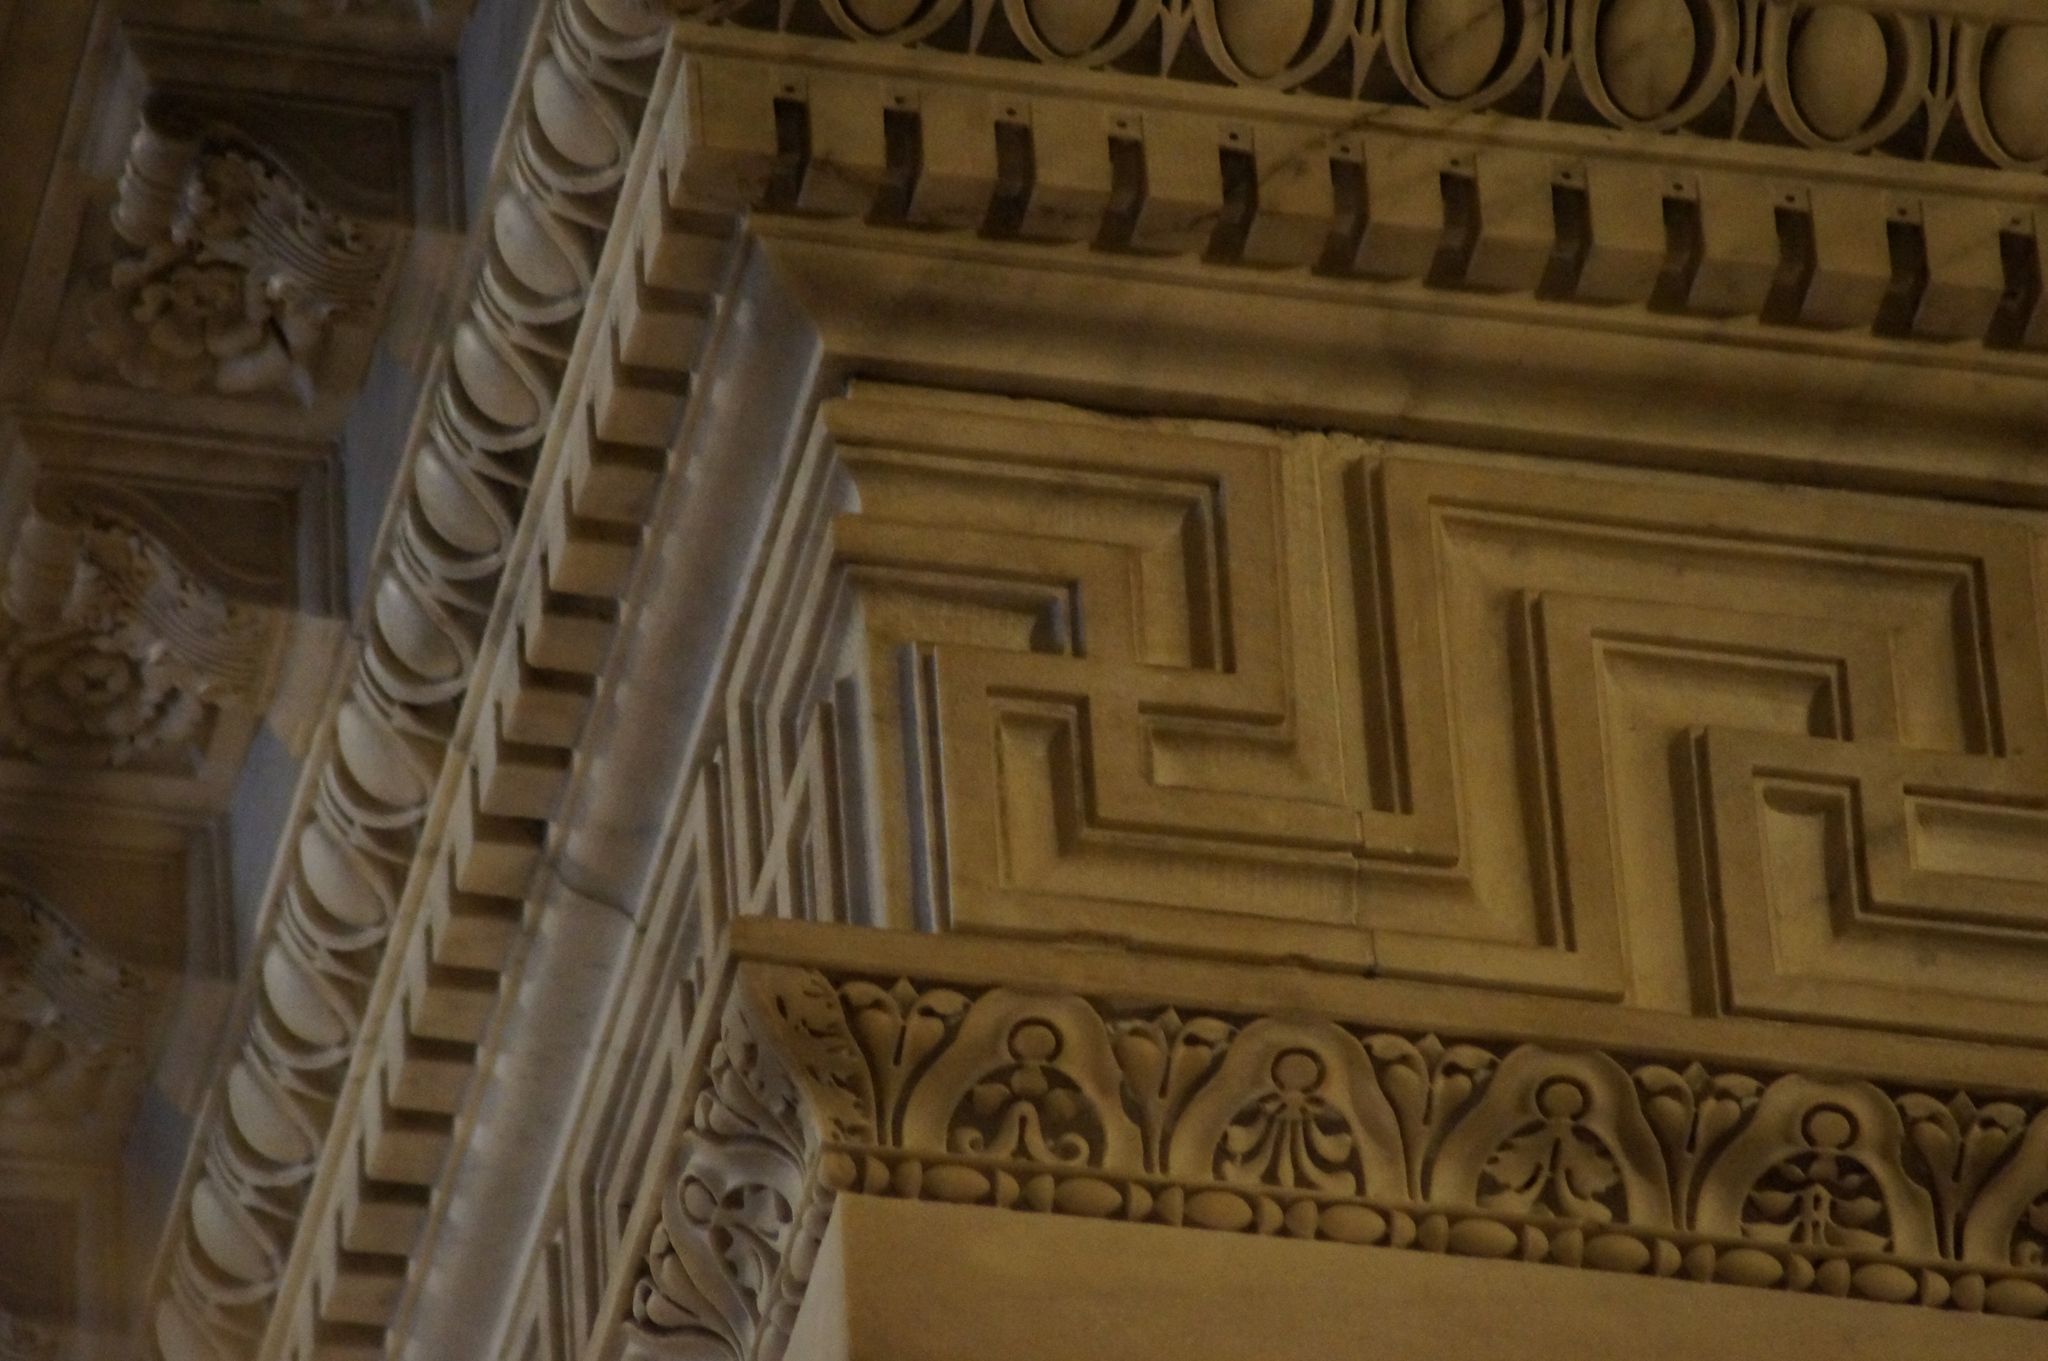 Greca del rivestimento marmoreo della Santa Casa di Nazareth, inglobata nella Basilica di Loreto (AN